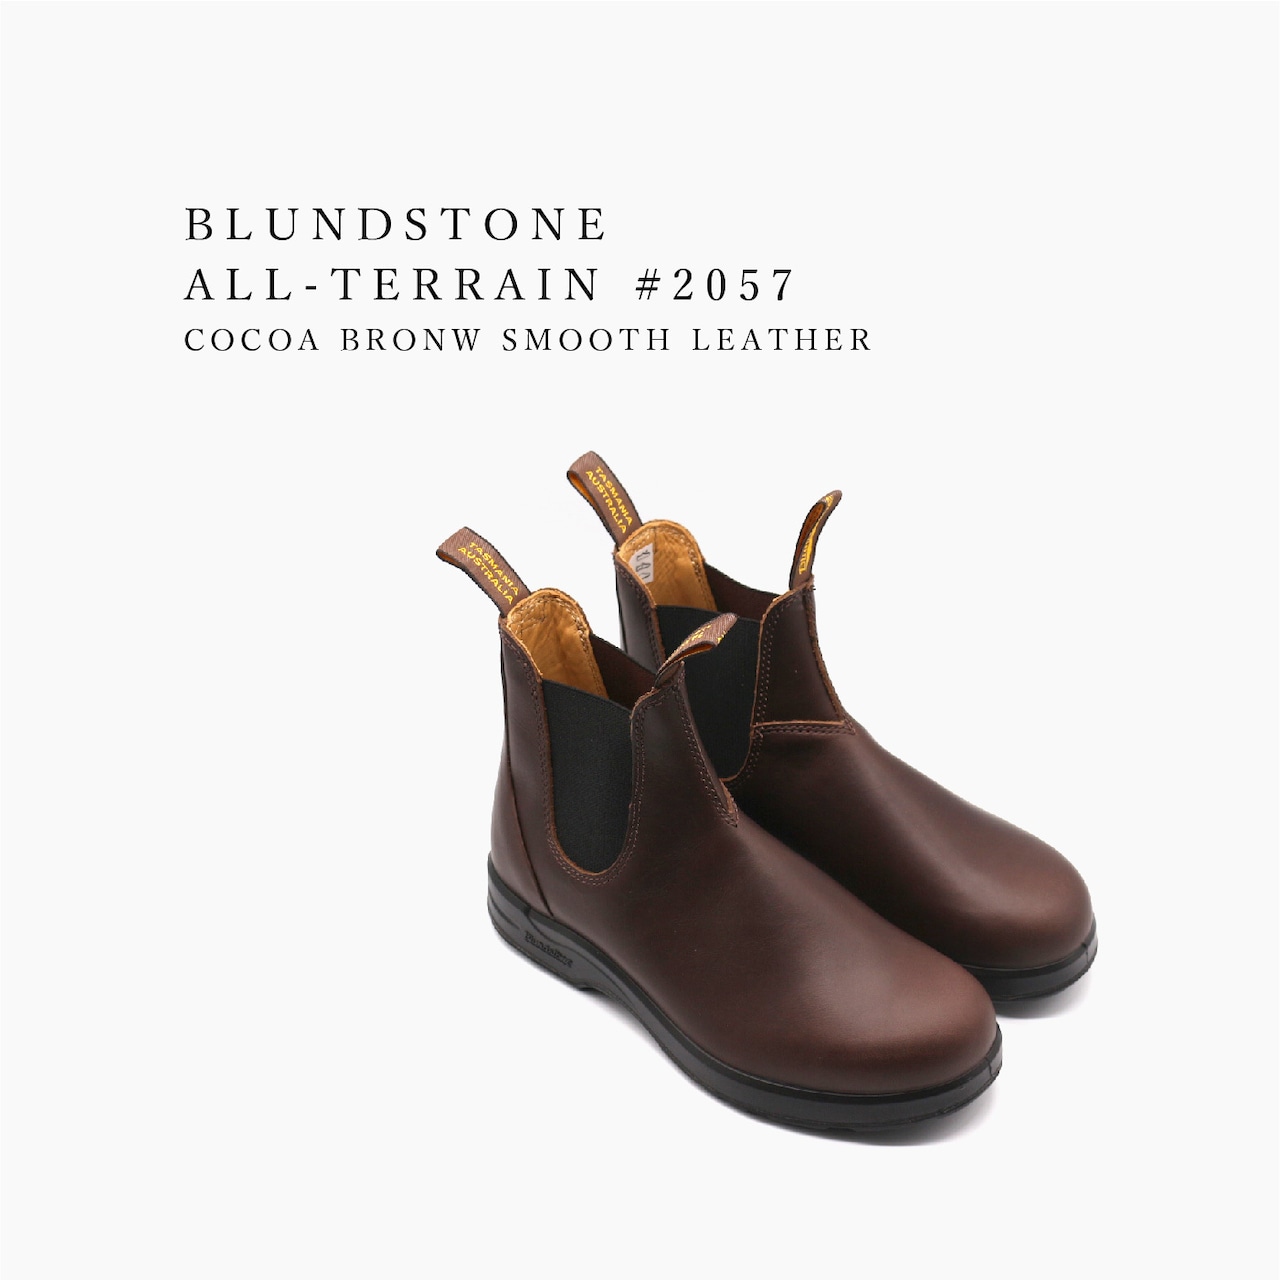 Blundstone ブランドストーン サイドゴア ブーツ チェルシーブーツ メンズ レディース ビブラム ソール ALL-TERRAIN BS 2057 769 COCOA BROWN SMOOTH LEATHER ブラウン